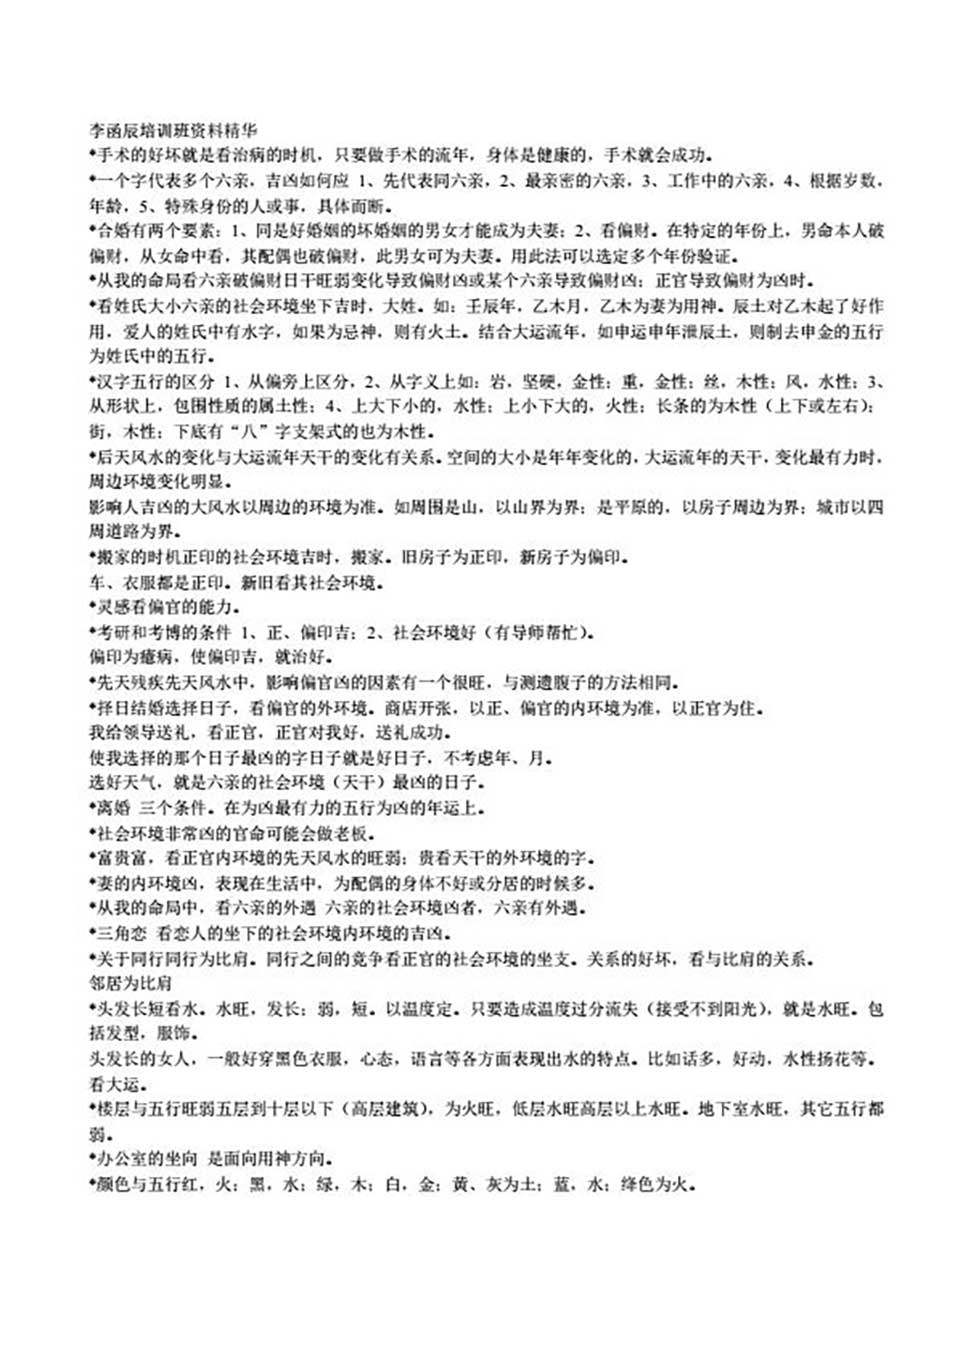 李函辰-培训班资料精华22页.pdf